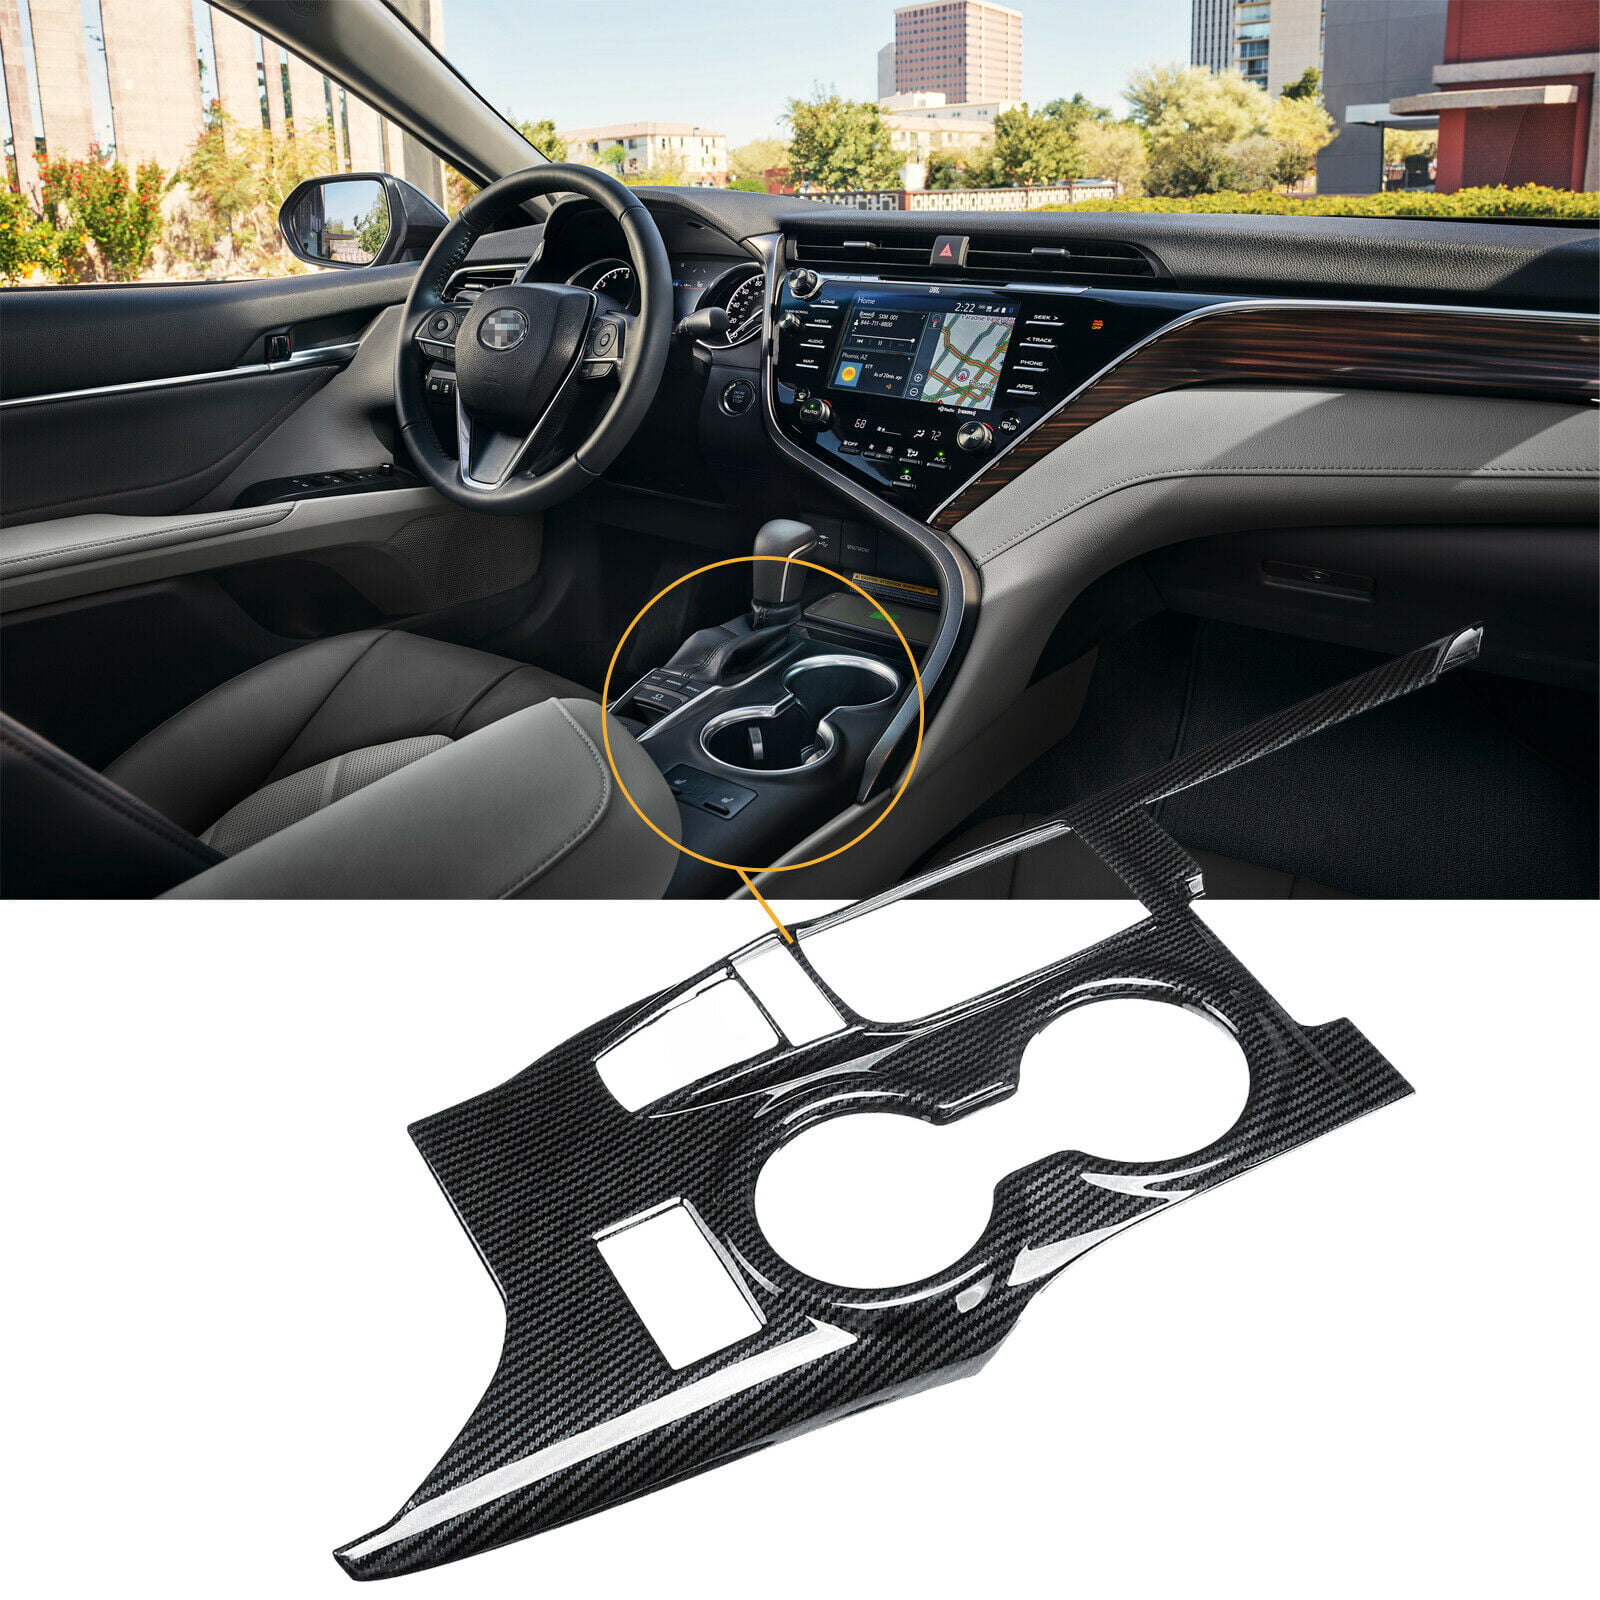 Carbon Fiber look Interior Gear Shift Knob Cover Trim For Toyota Camry 2018 2019 